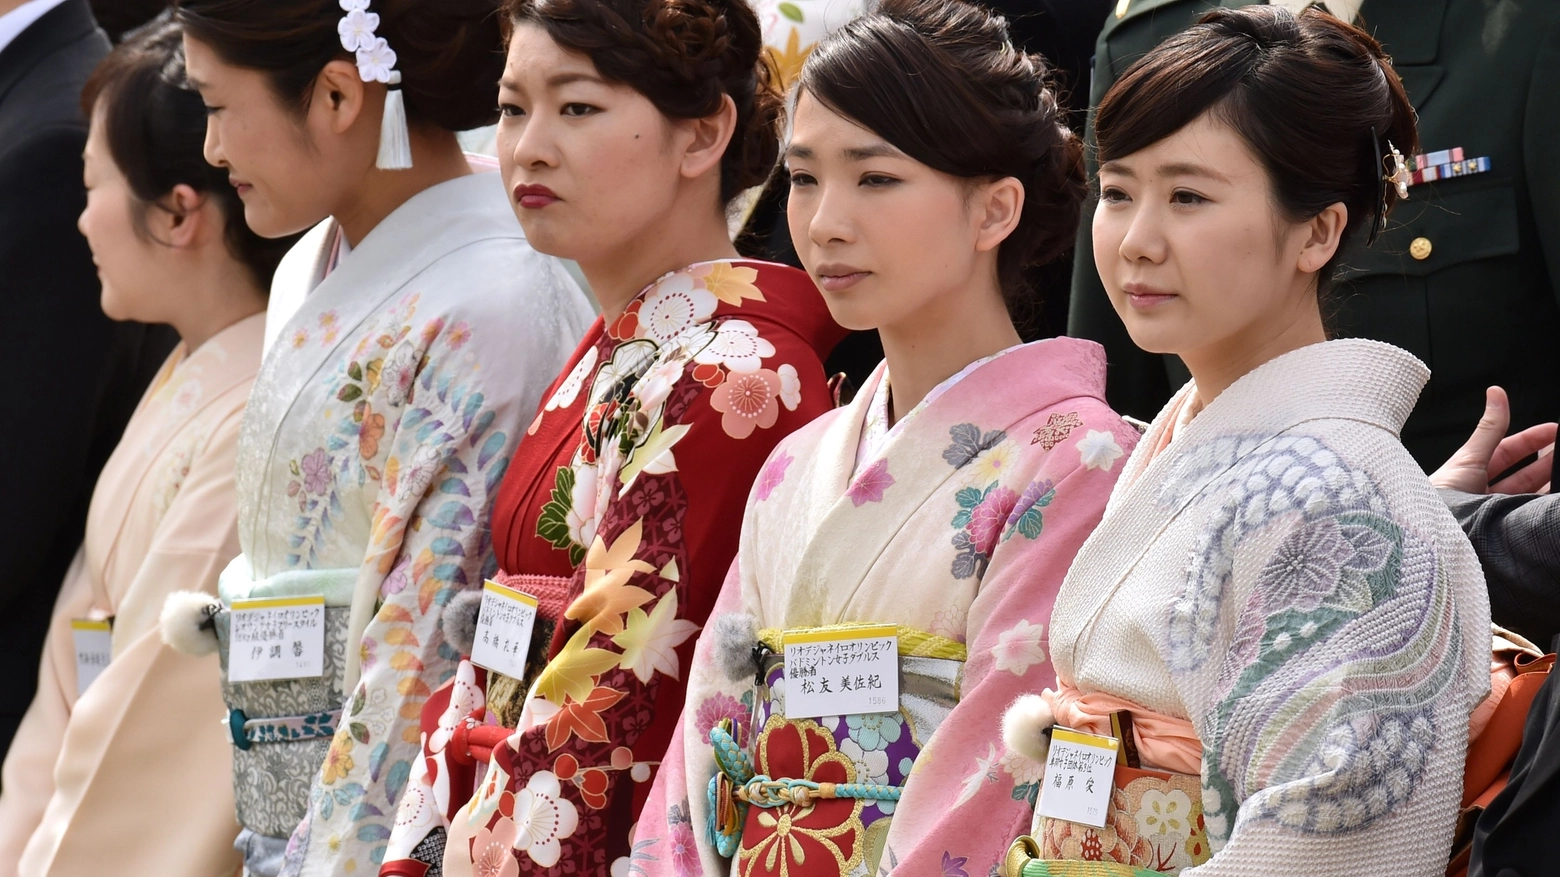 Il festival è dedicato al Giappone